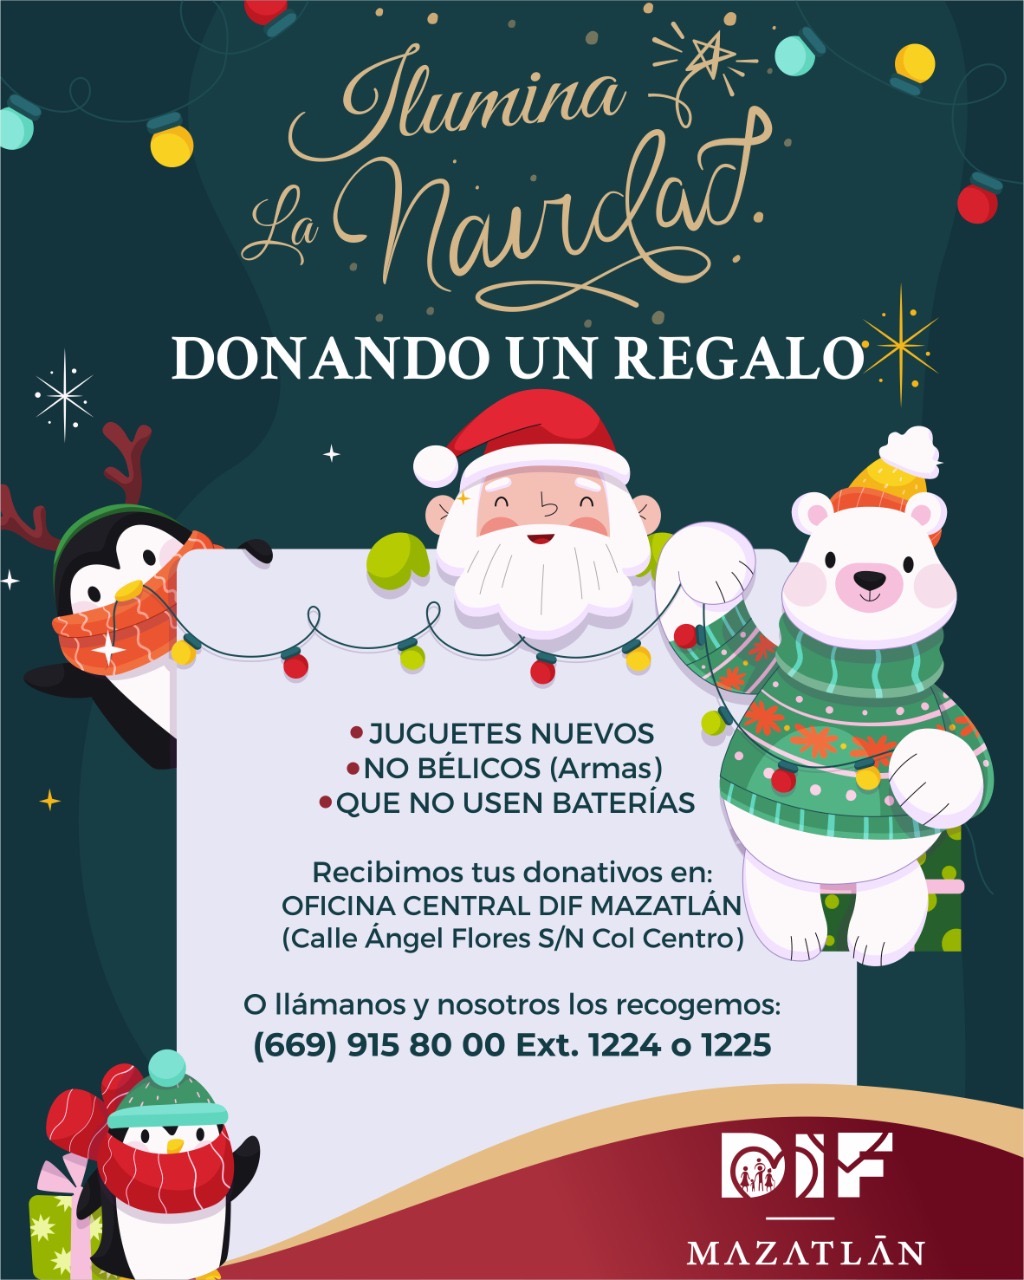 Invita DIF Mazatlán a sumarse a la campaña “Ilumina la navidad donando un regalo”